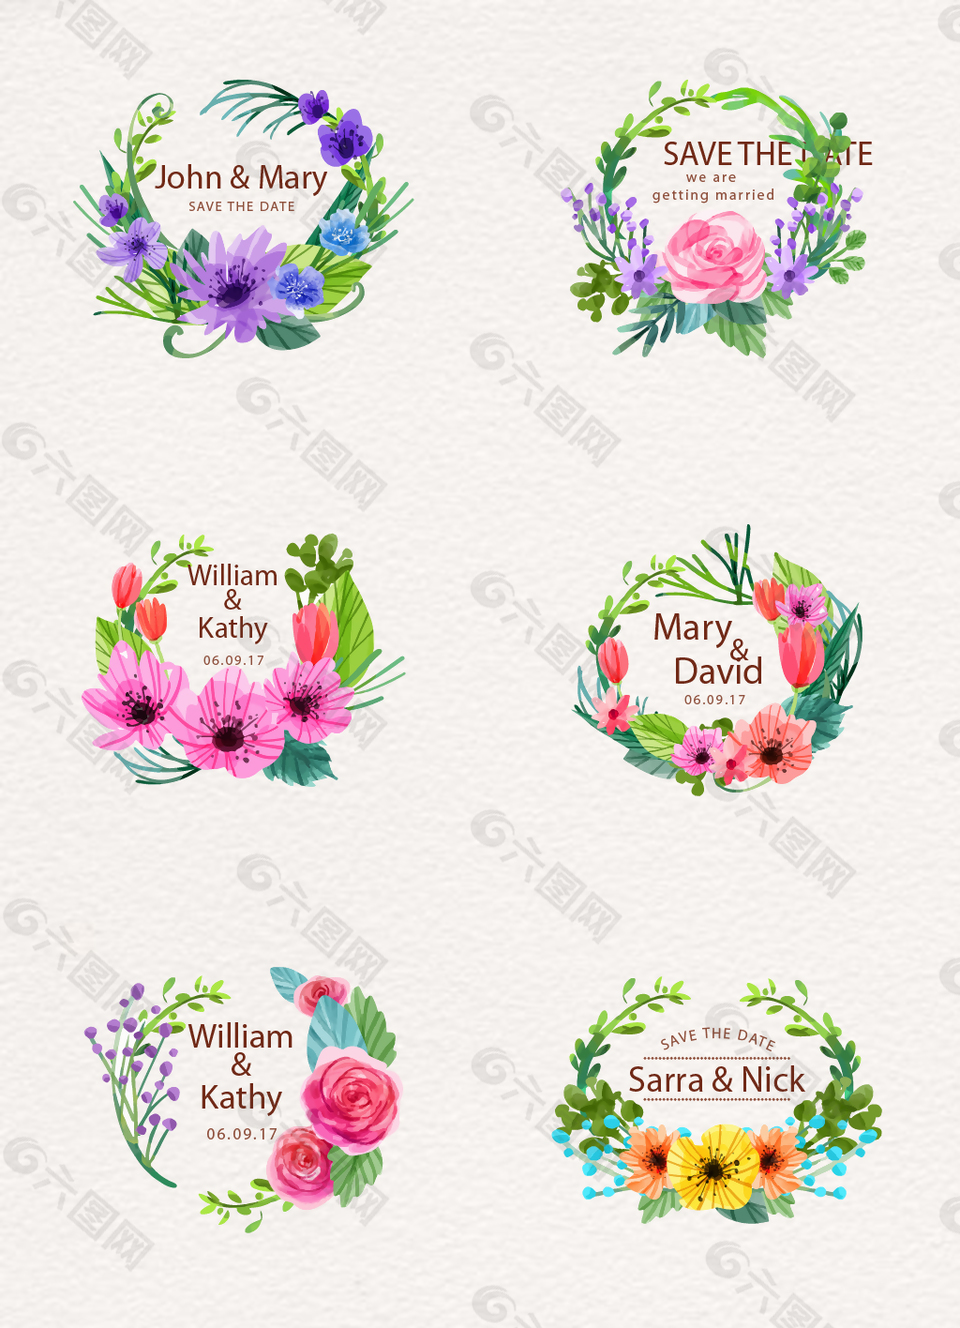 6款水彩绘花卉婚礼标签矢量素材